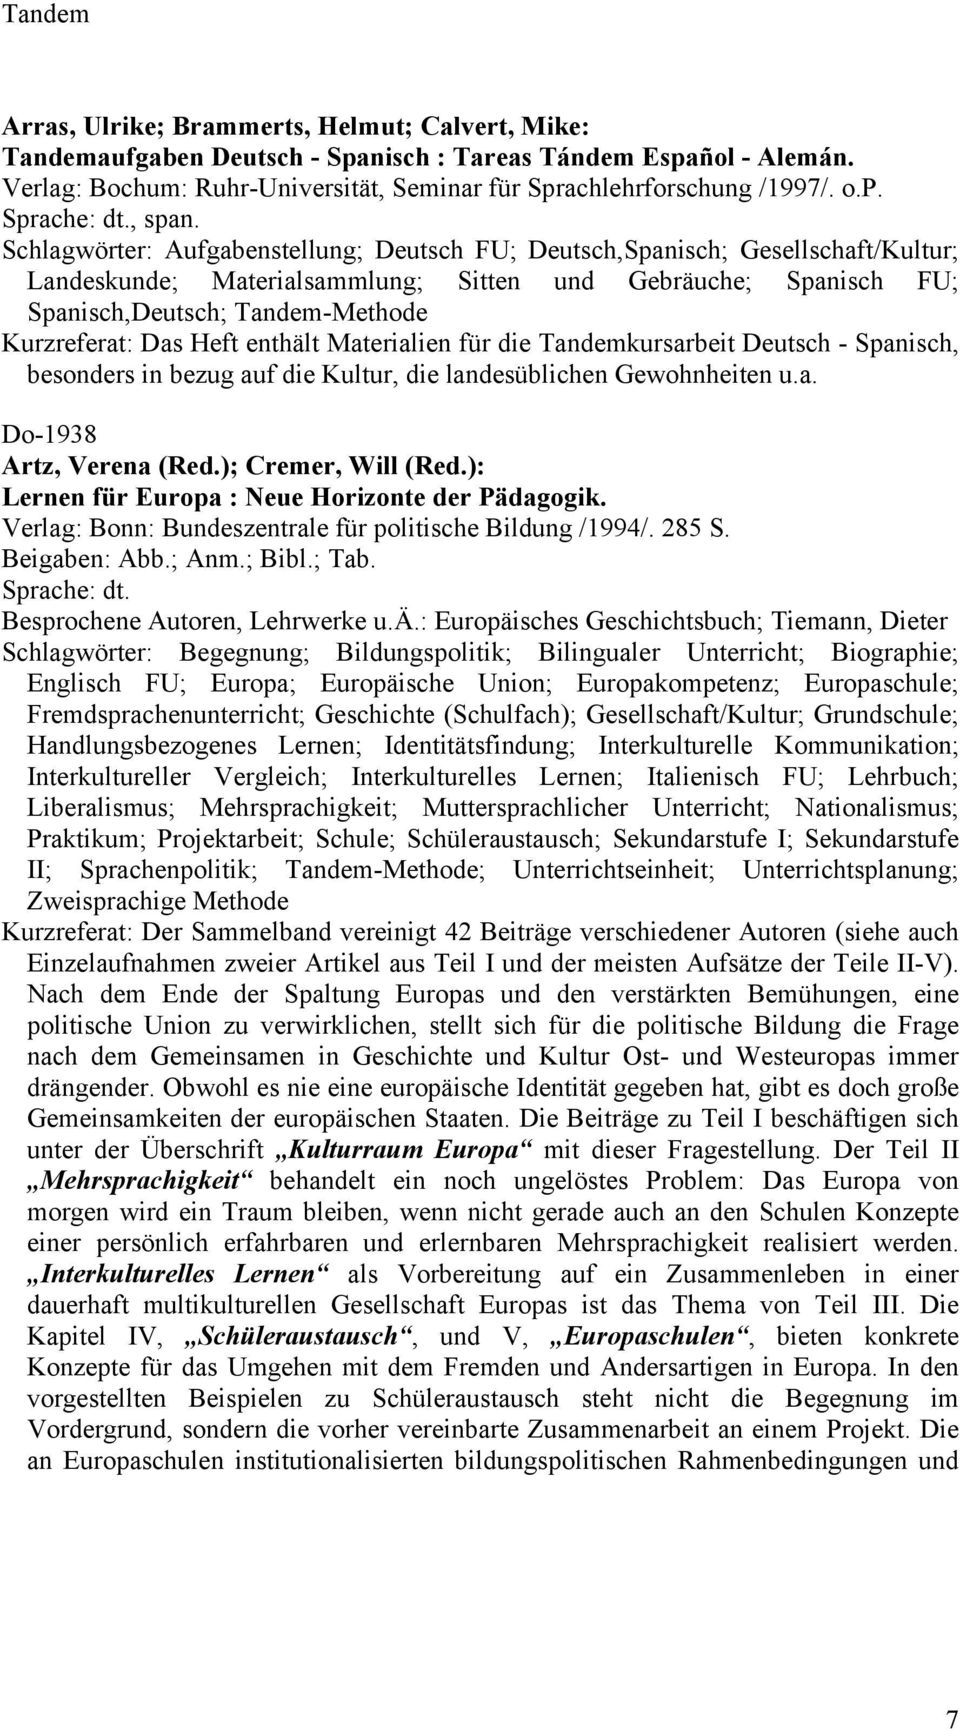 Heft enthält Materialien für die Tandemkursarbeit Deutsch - Spanisch, besonders in bezug auf die Kultur, die landesüblichen Gewohnheiten u.a. Do-1938 Artz, Verena (Red.); Cremer, Will (Red.